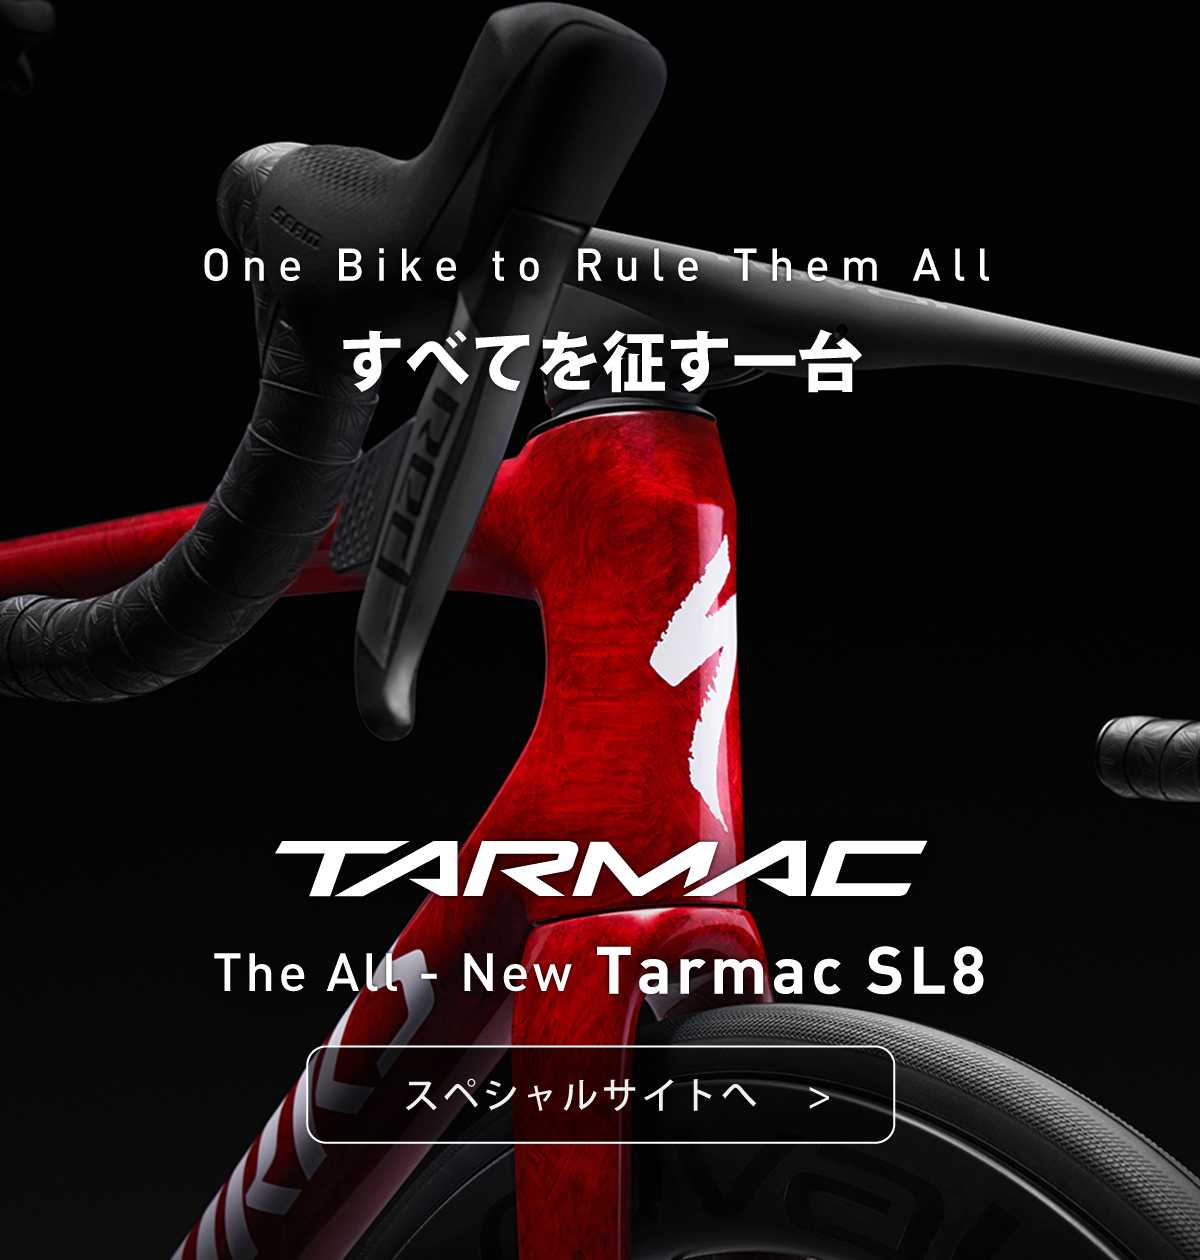 新型Tarmac SL8の全貌をまとめた特設サイトへ